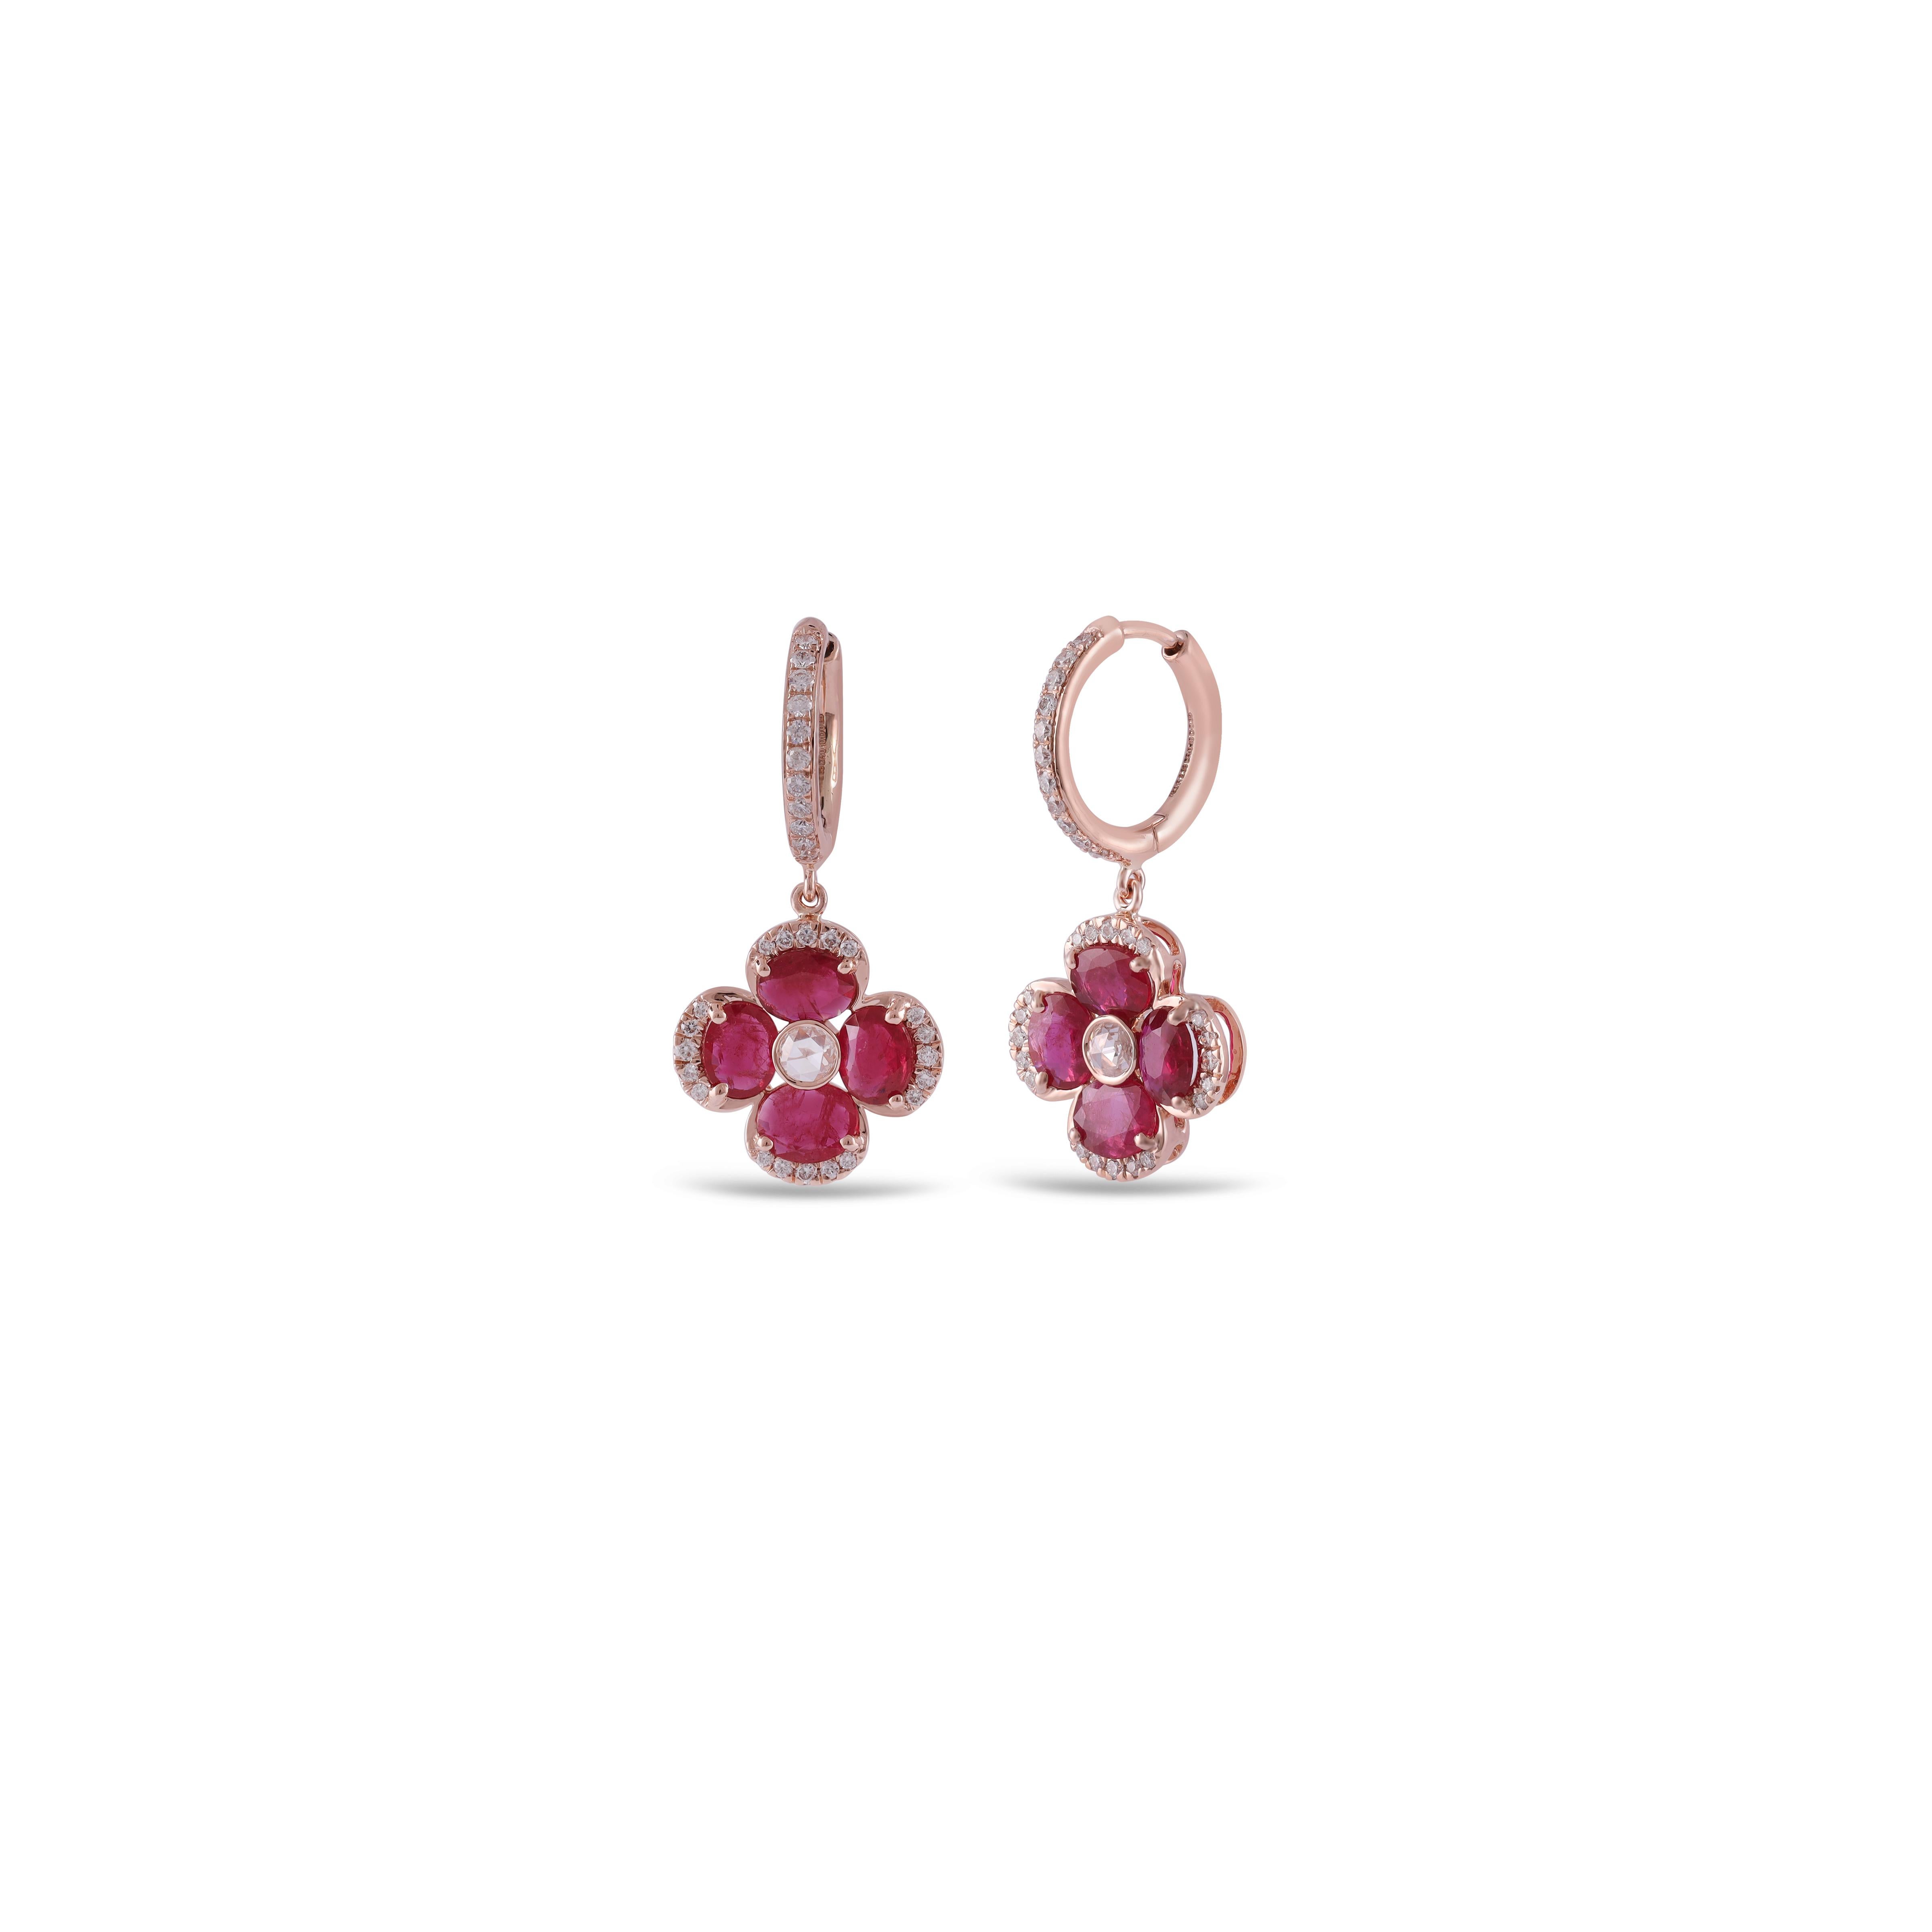 Si vous cherchez des boucles d'oreilles en rubis, voici la perle rare, (2.33 carats) de la plus belle couleur de rubis est le point focal. Parfaitement adaptés en termes de couleur, de taille et de transparence. La couleur est celle que vous